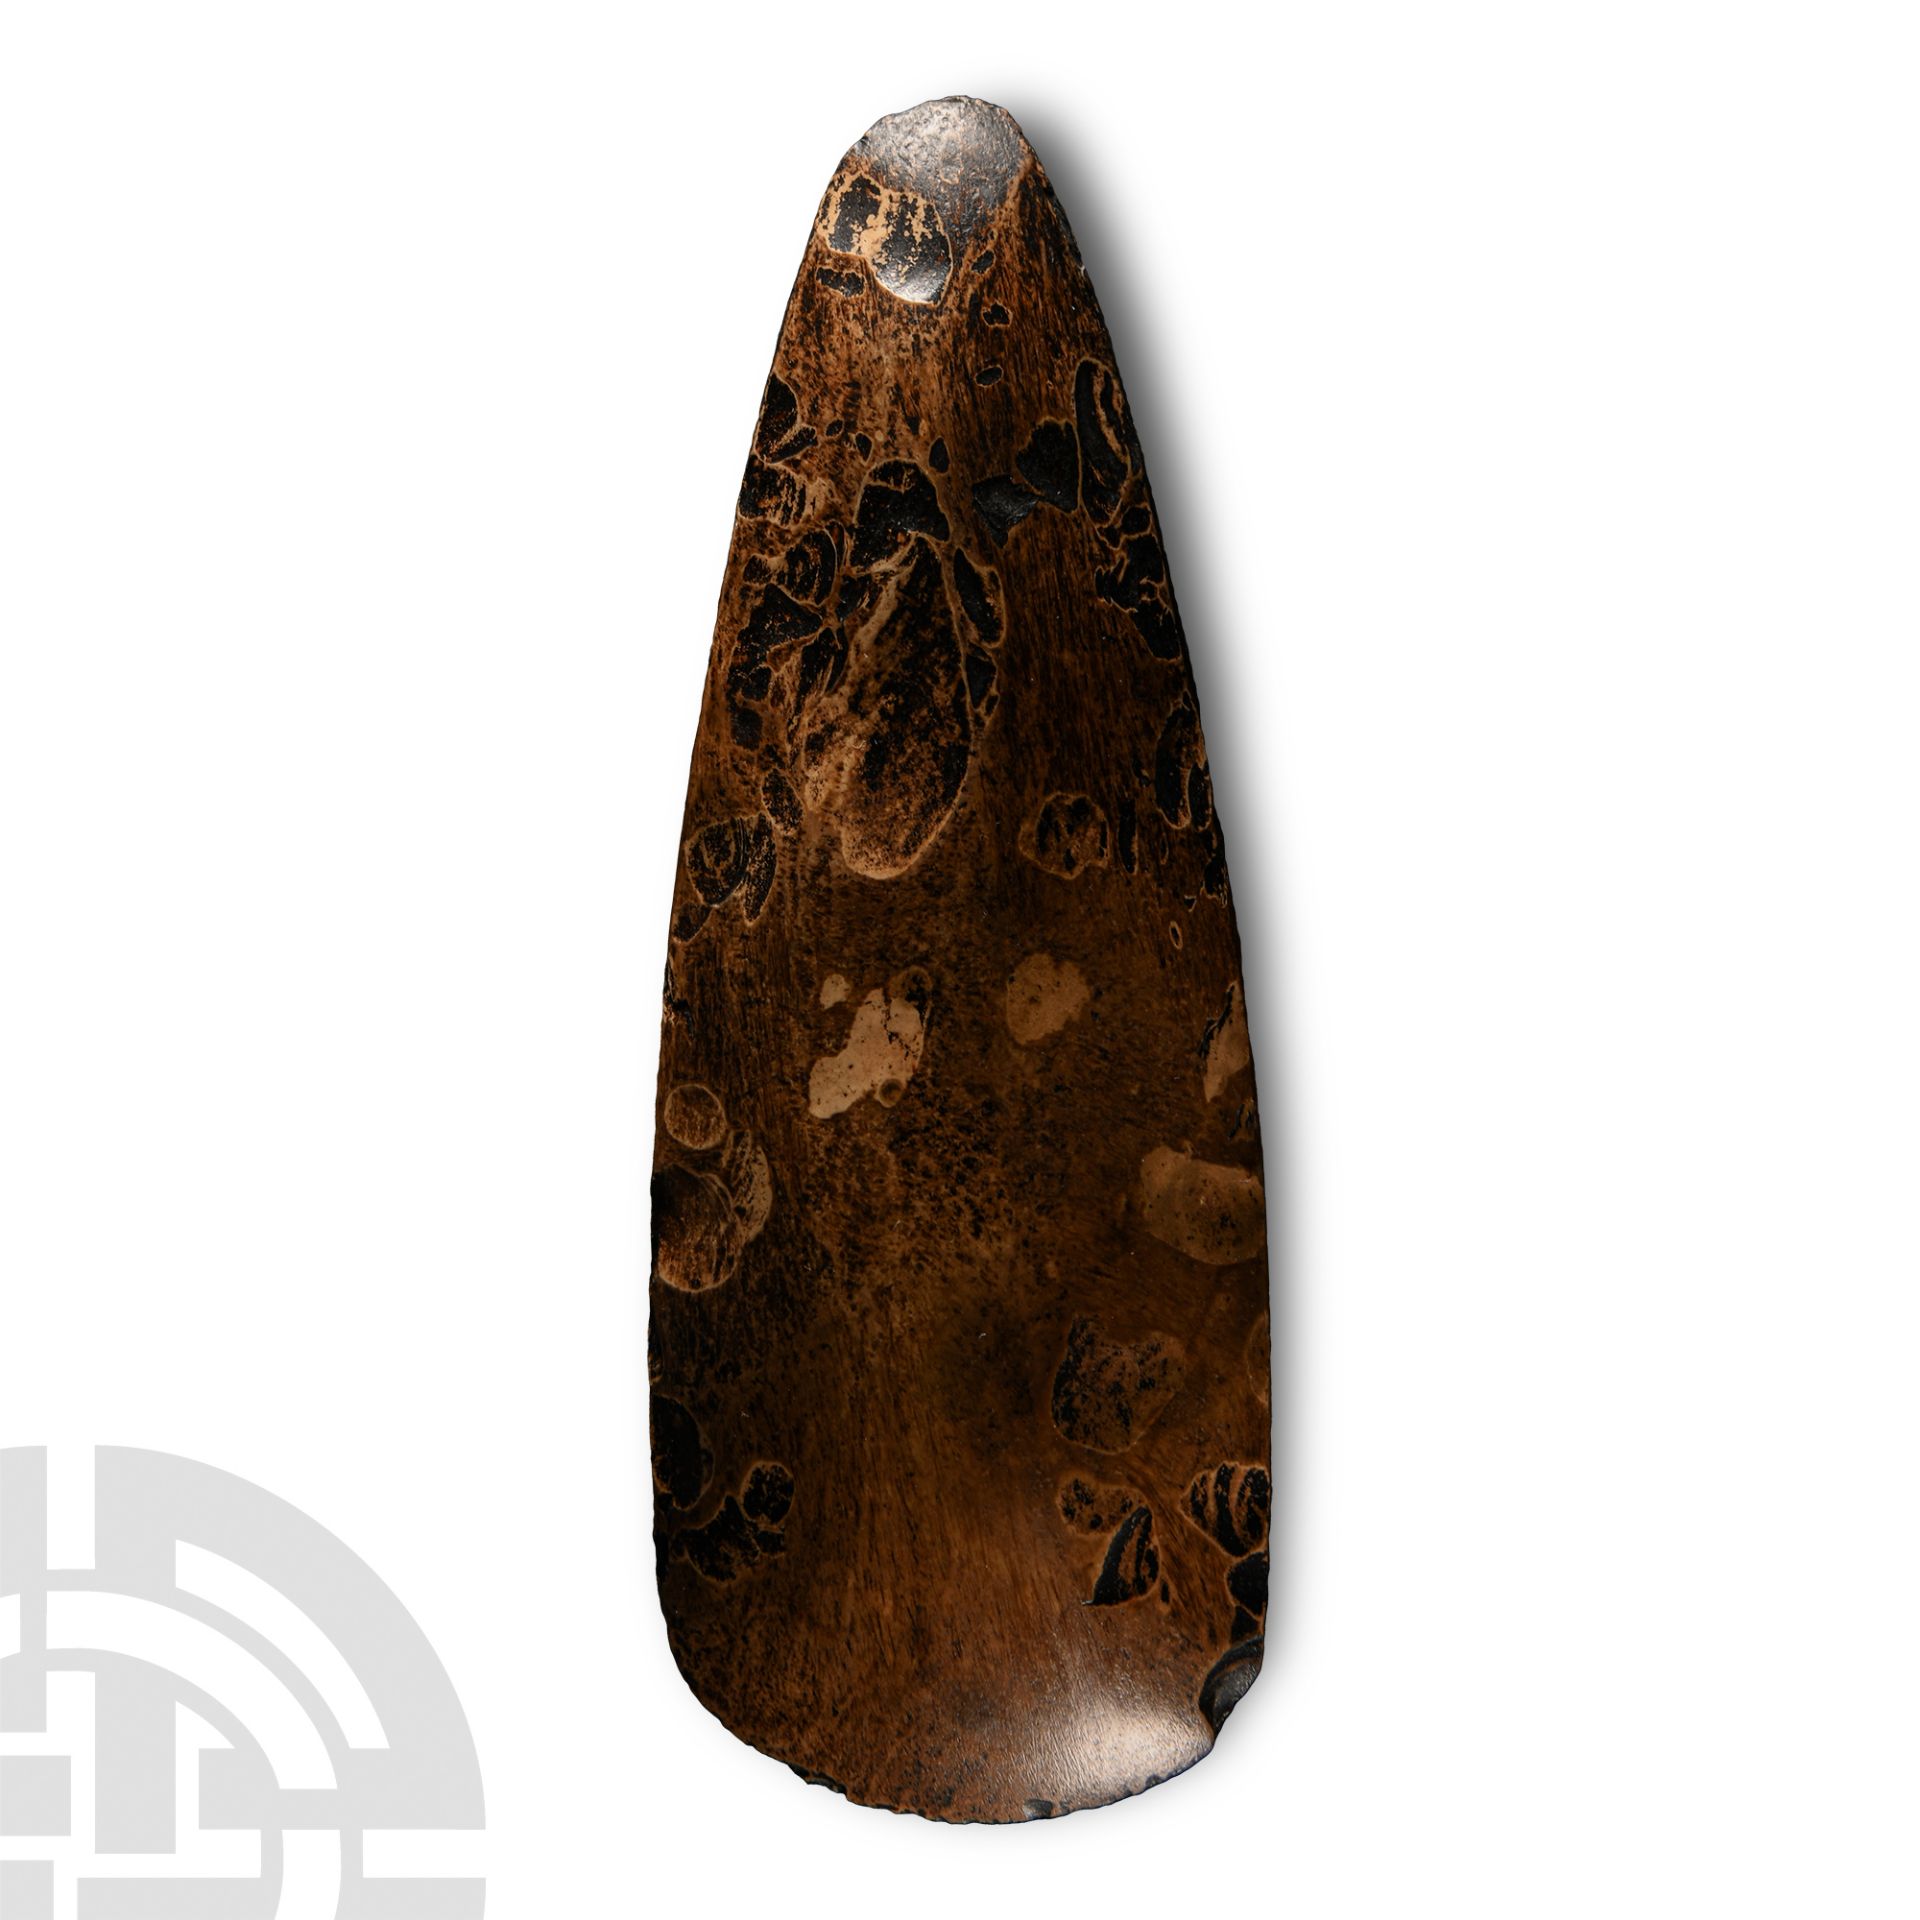 Stone Age Polished Stone Handaxe